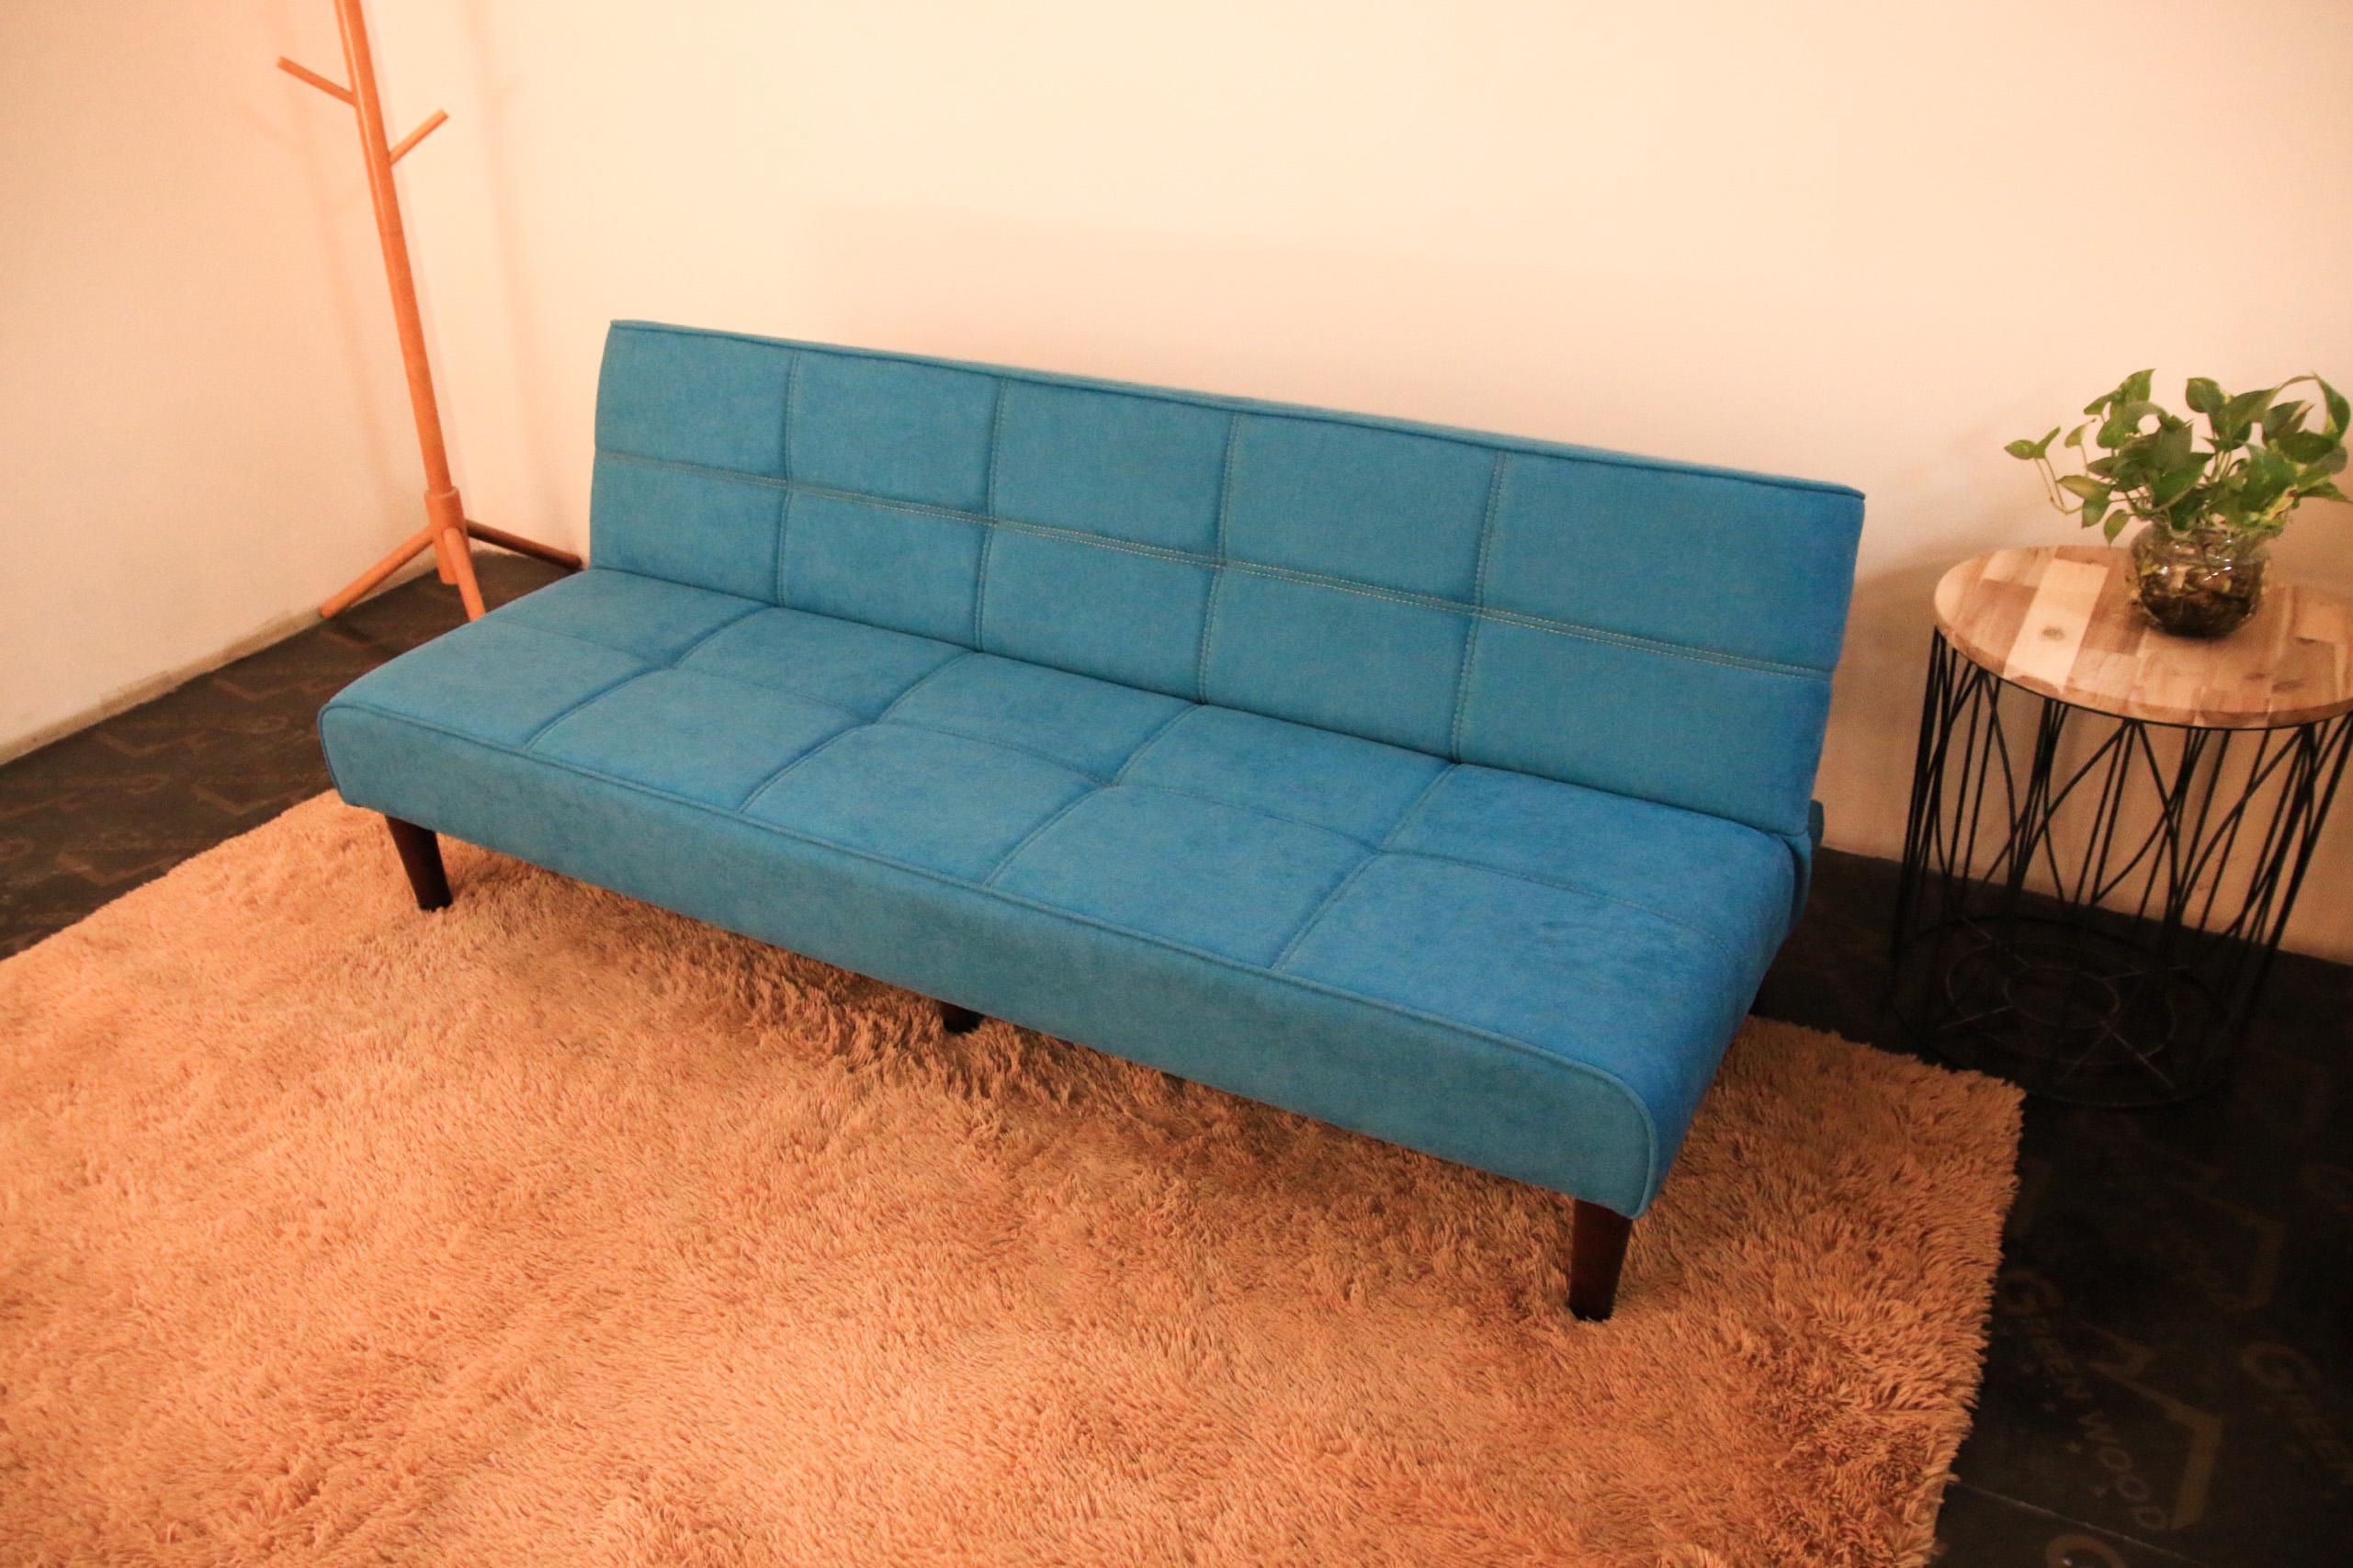 Sofa bed 3 trong 1 Juno sofa chân gỗ màu xanh ngọc